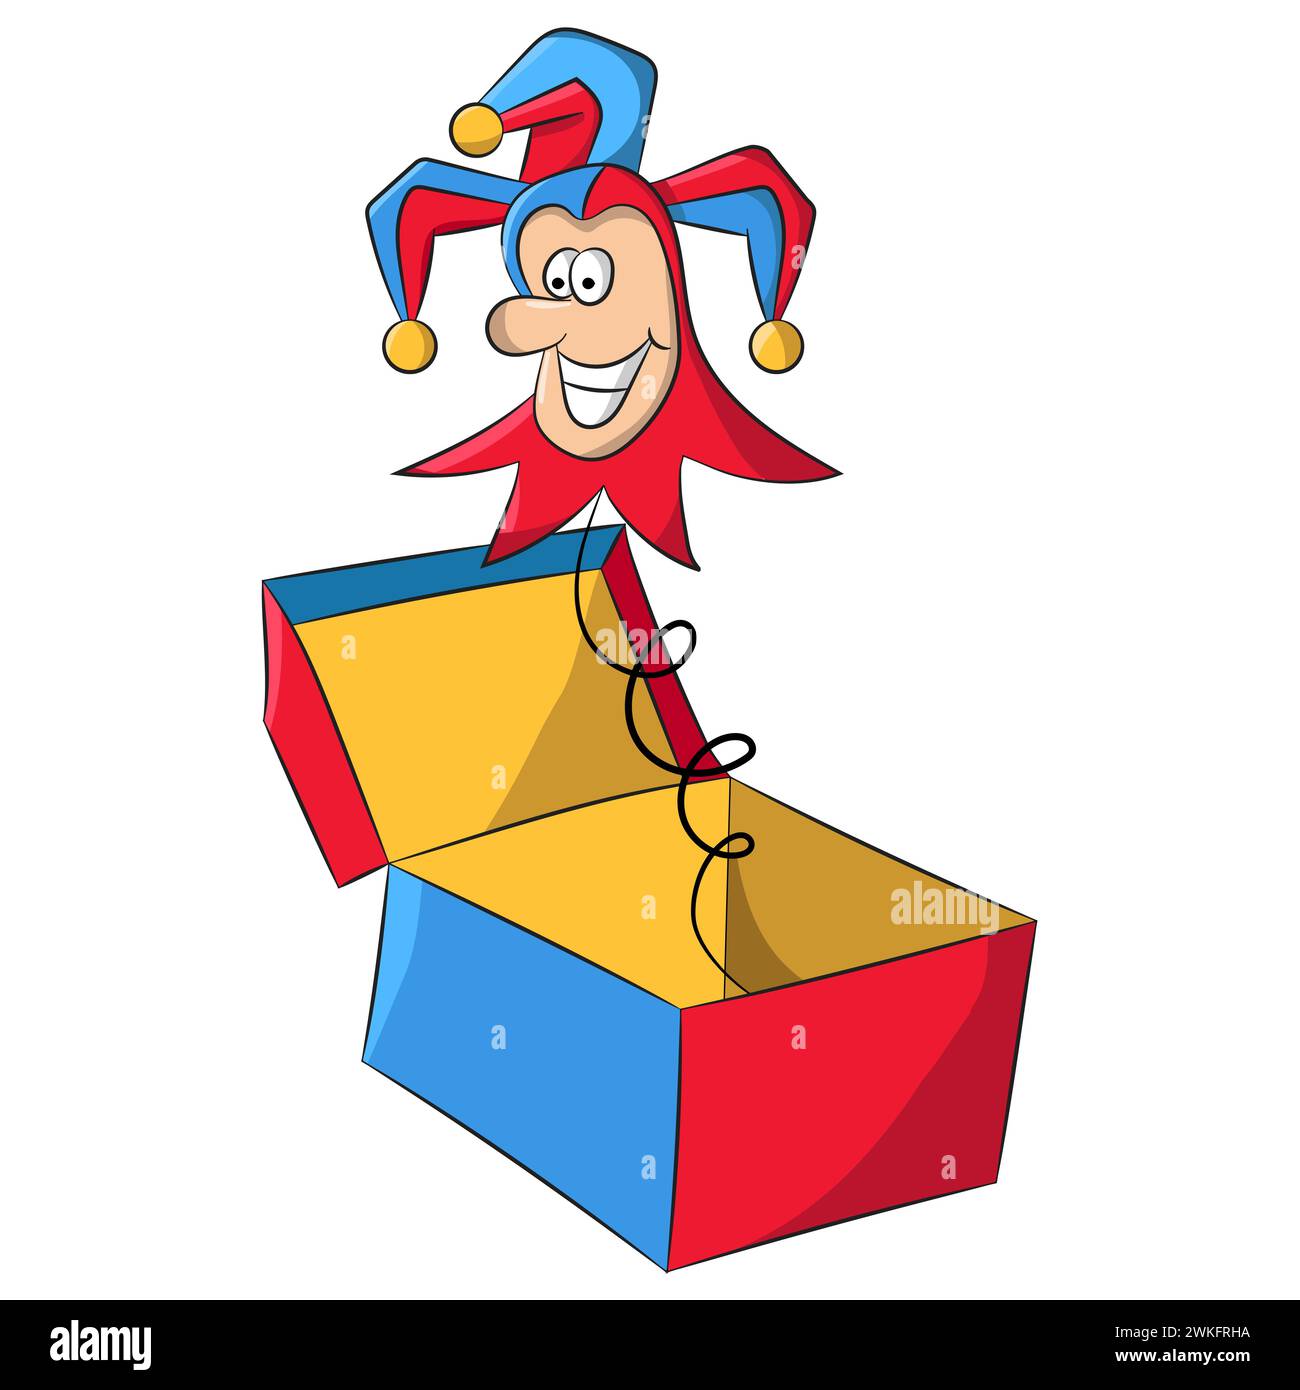 Personnage de dessin animé Jack-in-the-box Jester sortant d'une boîte, élément de style April Fools Illustration de Vecteur